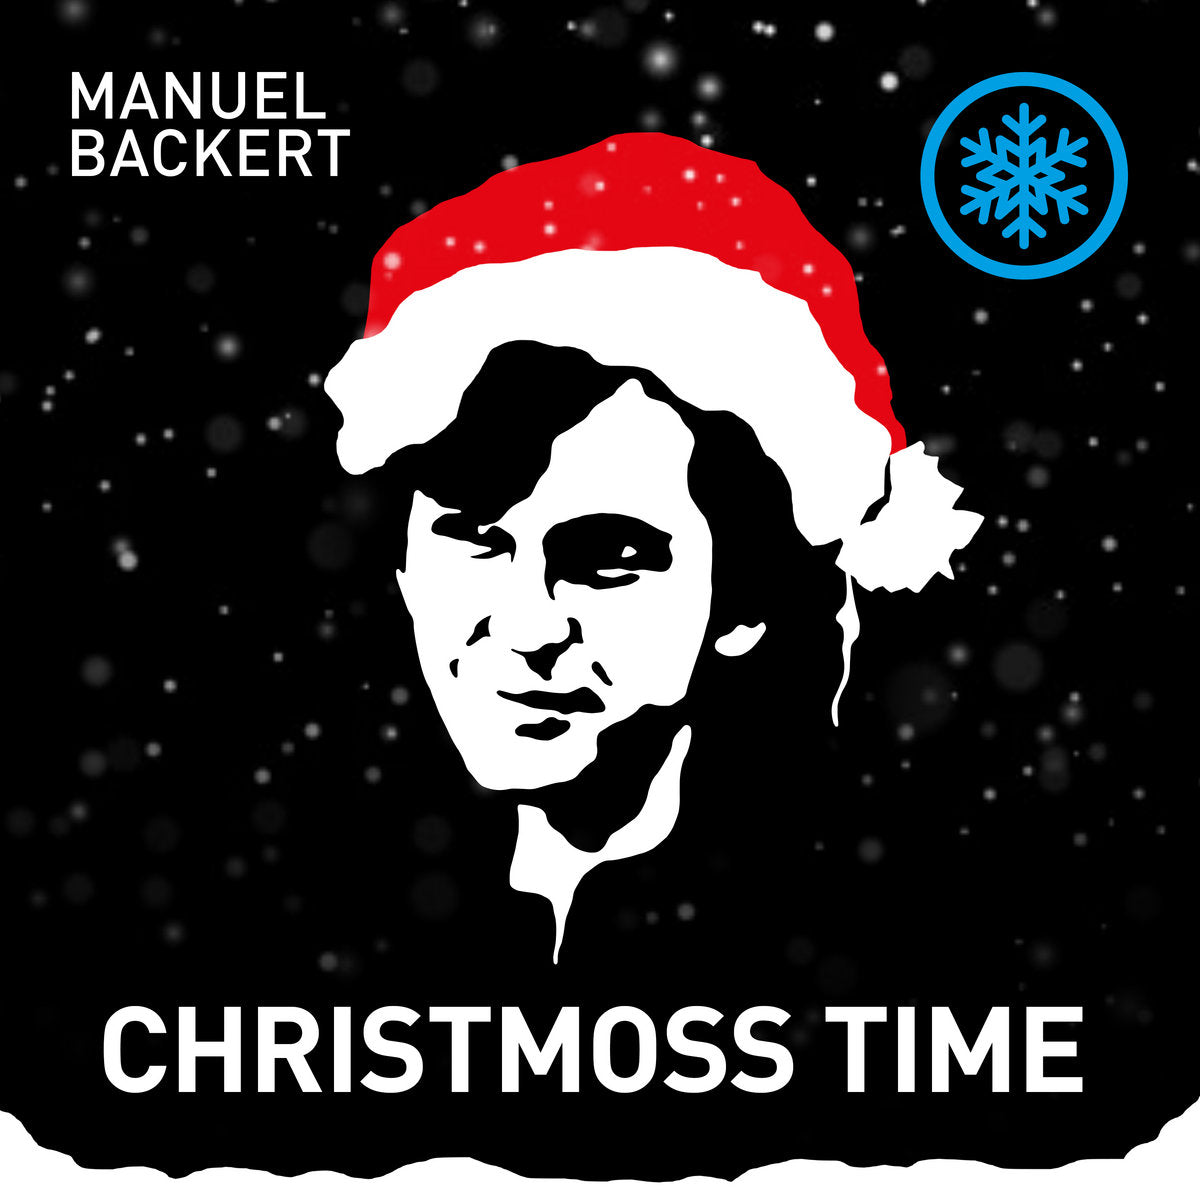 Manuel Backert - Christmoss Time